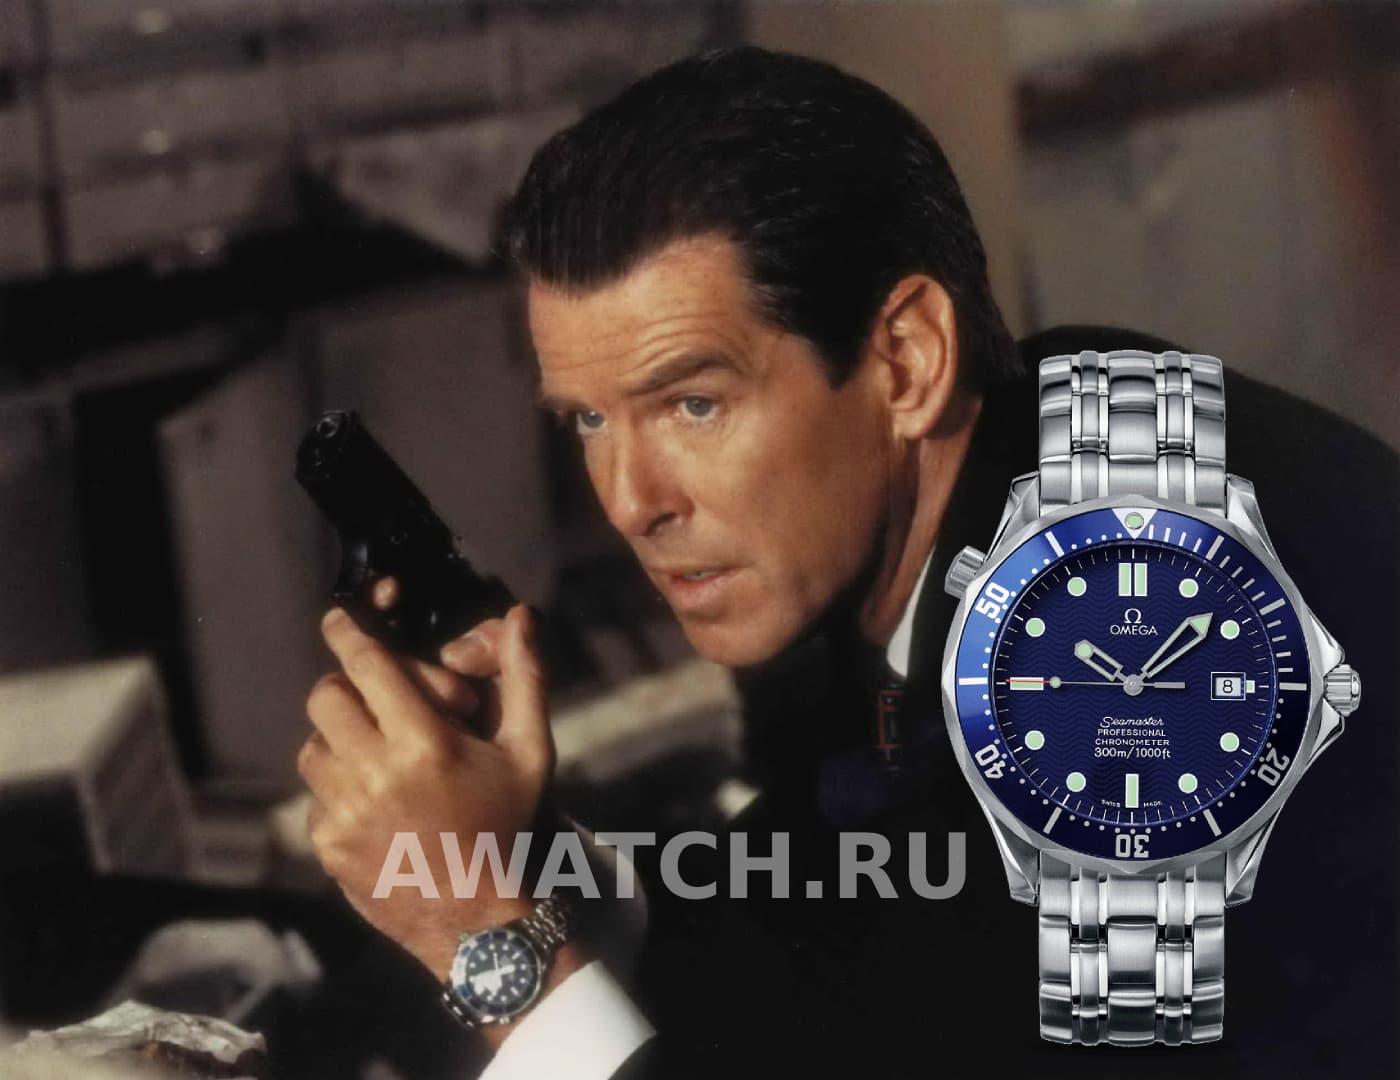 Часы Джеймса Бонда 007 в фильме Tomorrow Never Dies) (1997) Завтра не умрёт никогда (1997)